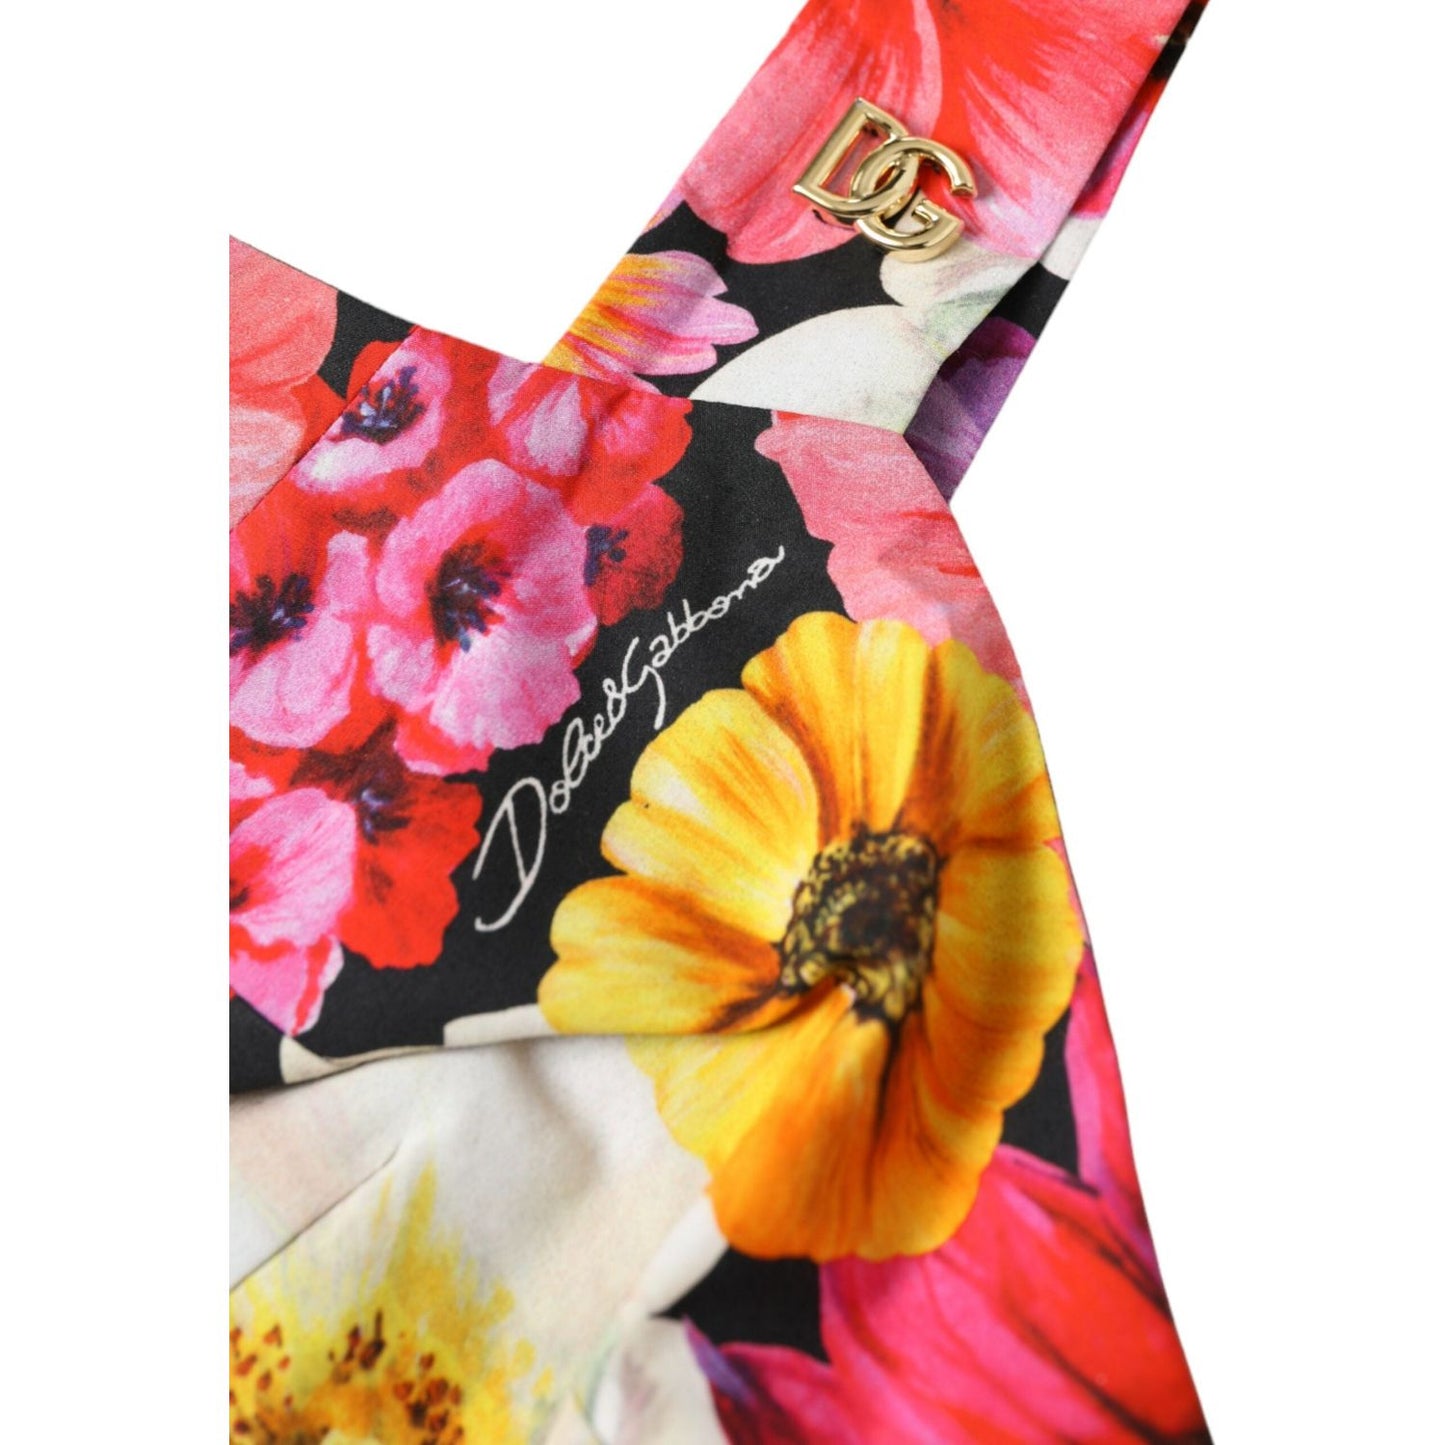 Dolce & Gabbana Exquisite Floral Bustier Crop Top exquisite-floral-bustier-crop-top